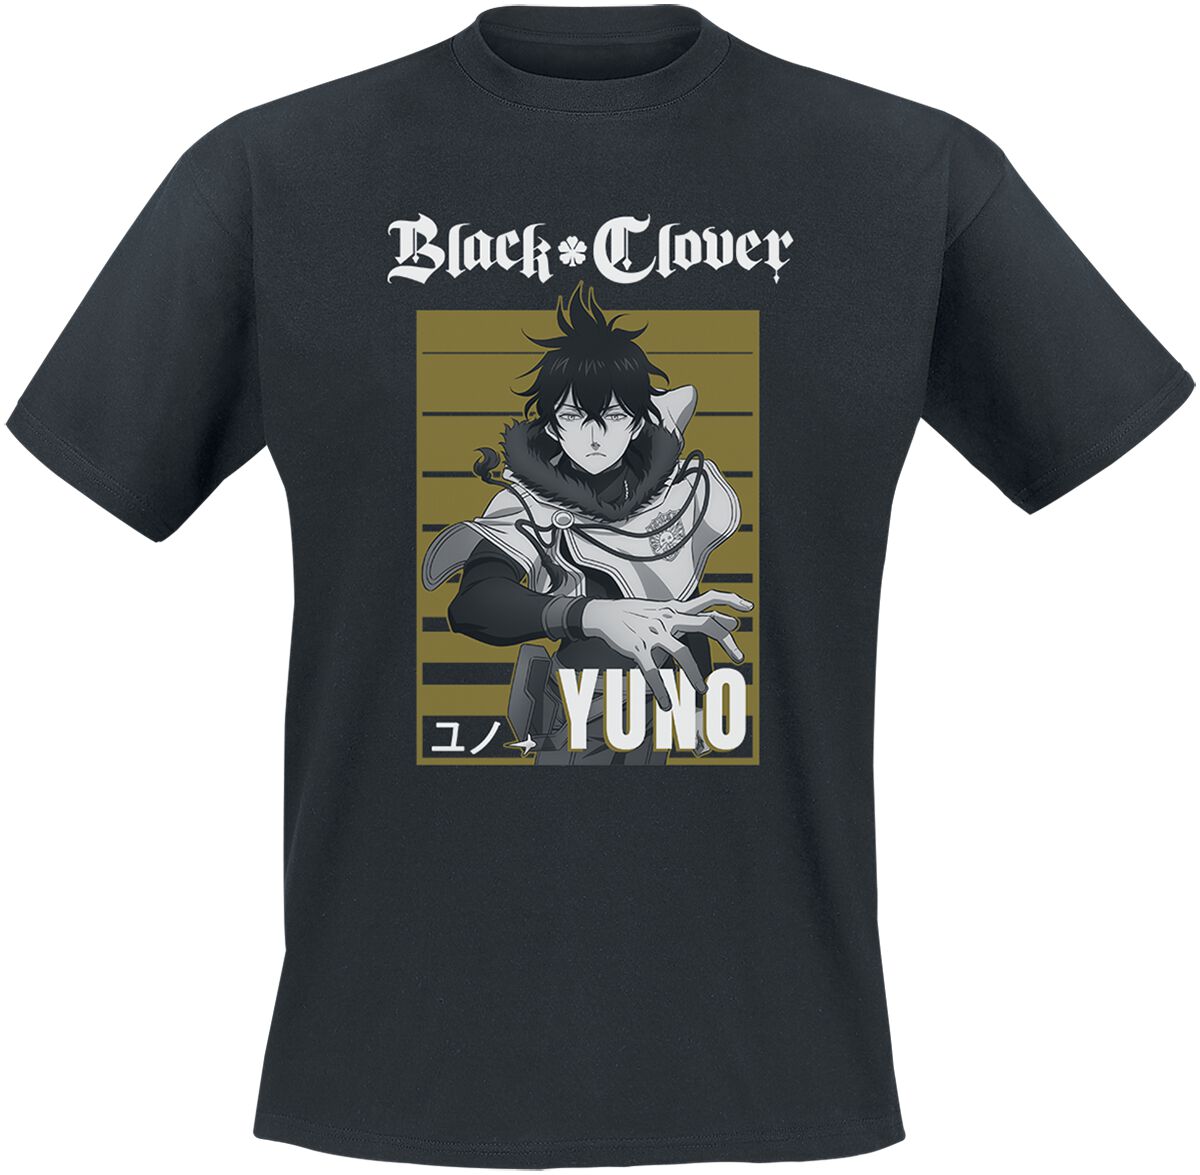 Black Clover - Anime T-Shirt - Yuno - S bis XL - für Männer - Größe M - schwarz  - Lizenzierter Fanartikel